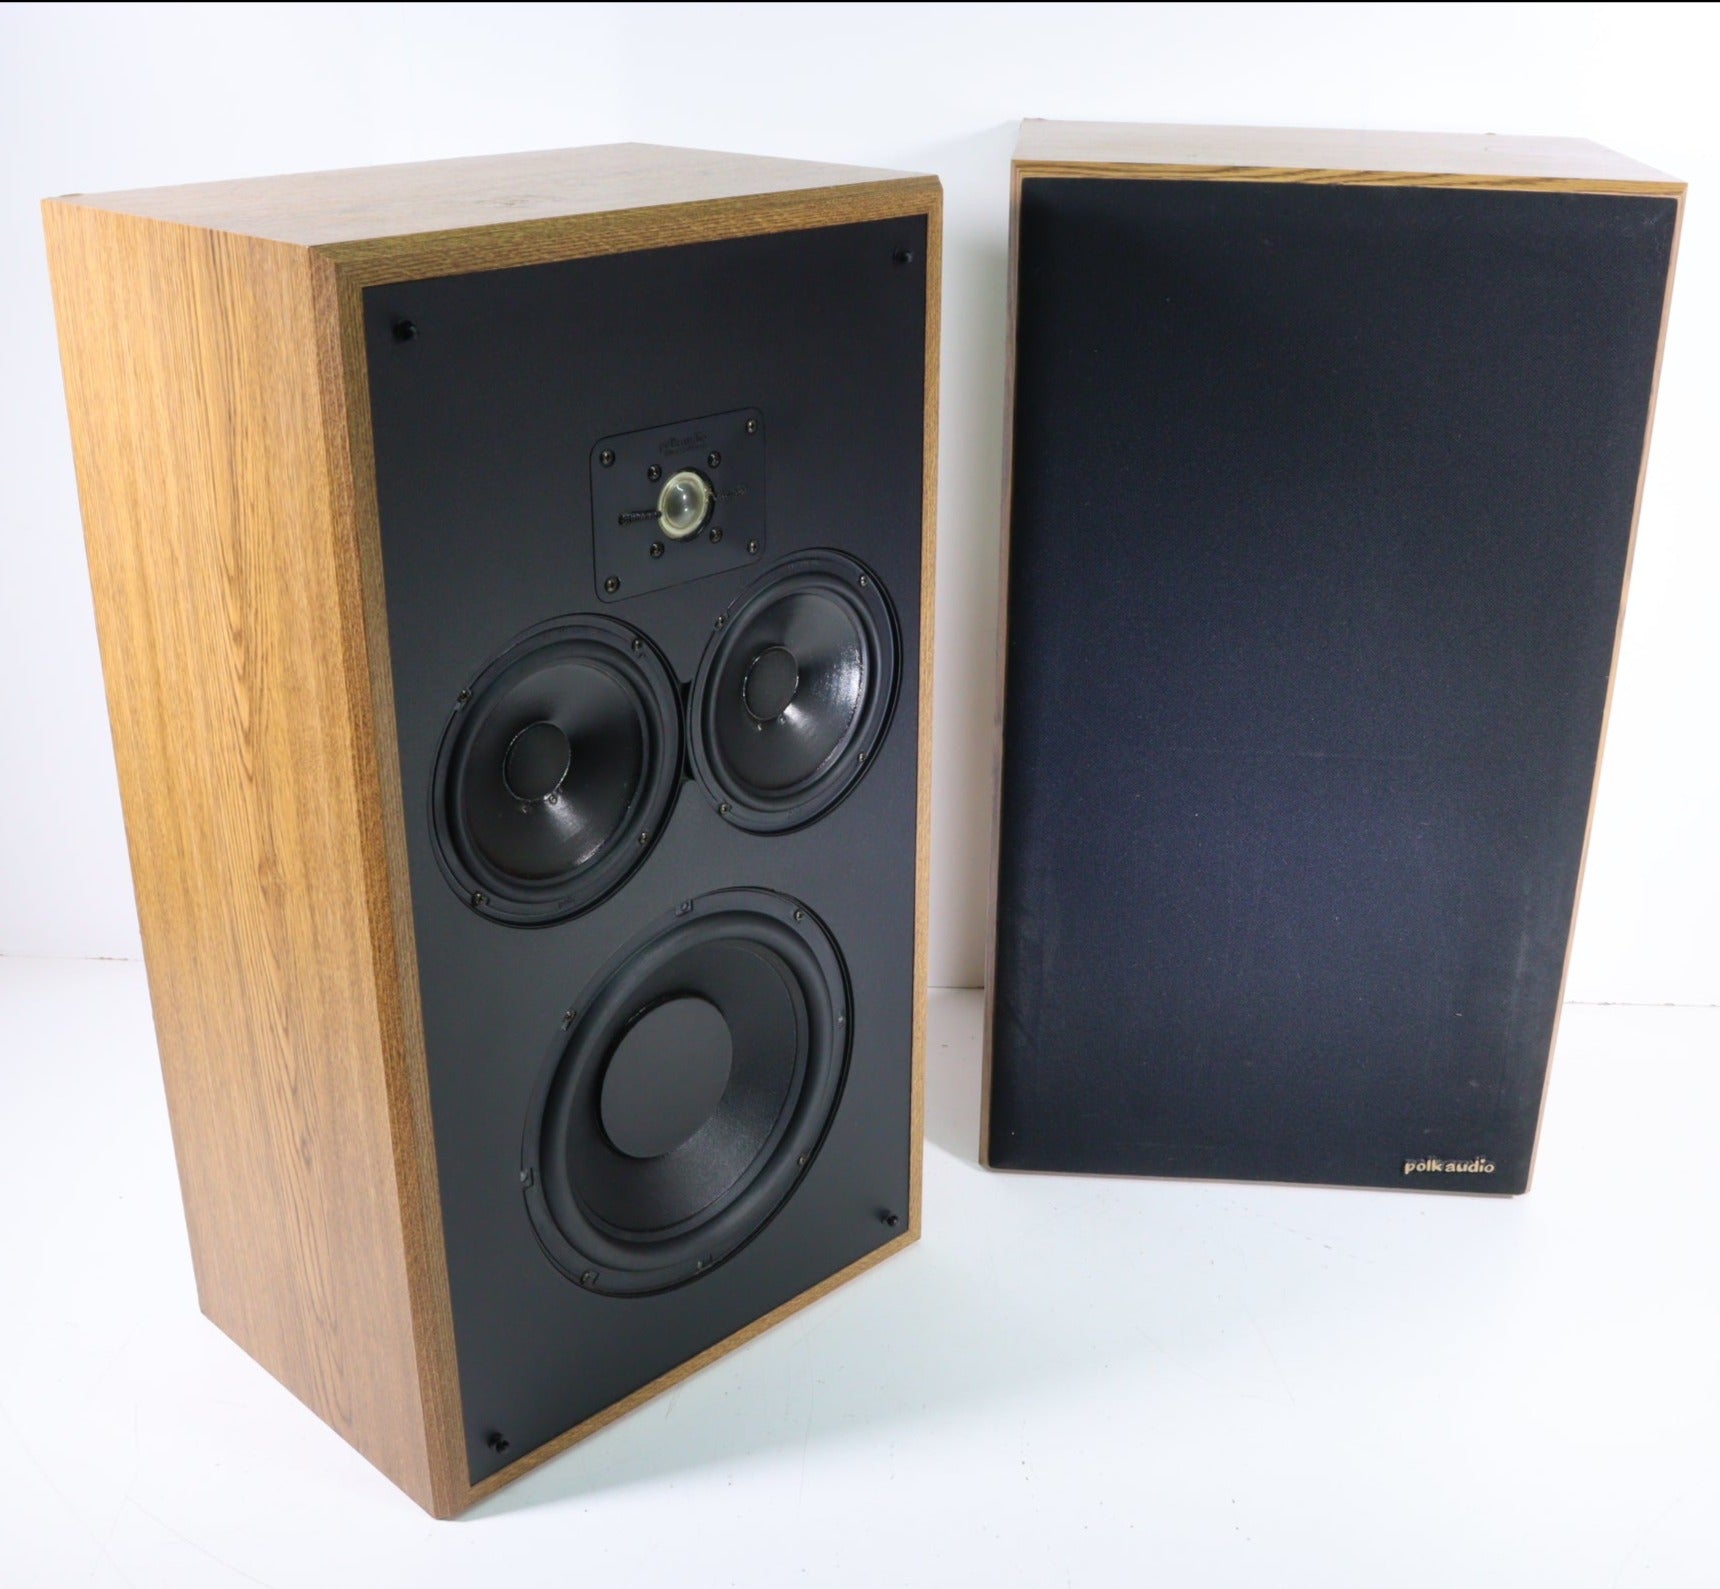 http://spencertified.com/cdn/shop/files/Polk-Audio-Monitor-Series-10-4-Way-Floorstanding-Speaker-Pair-Speakers.jpg?v=1706302680